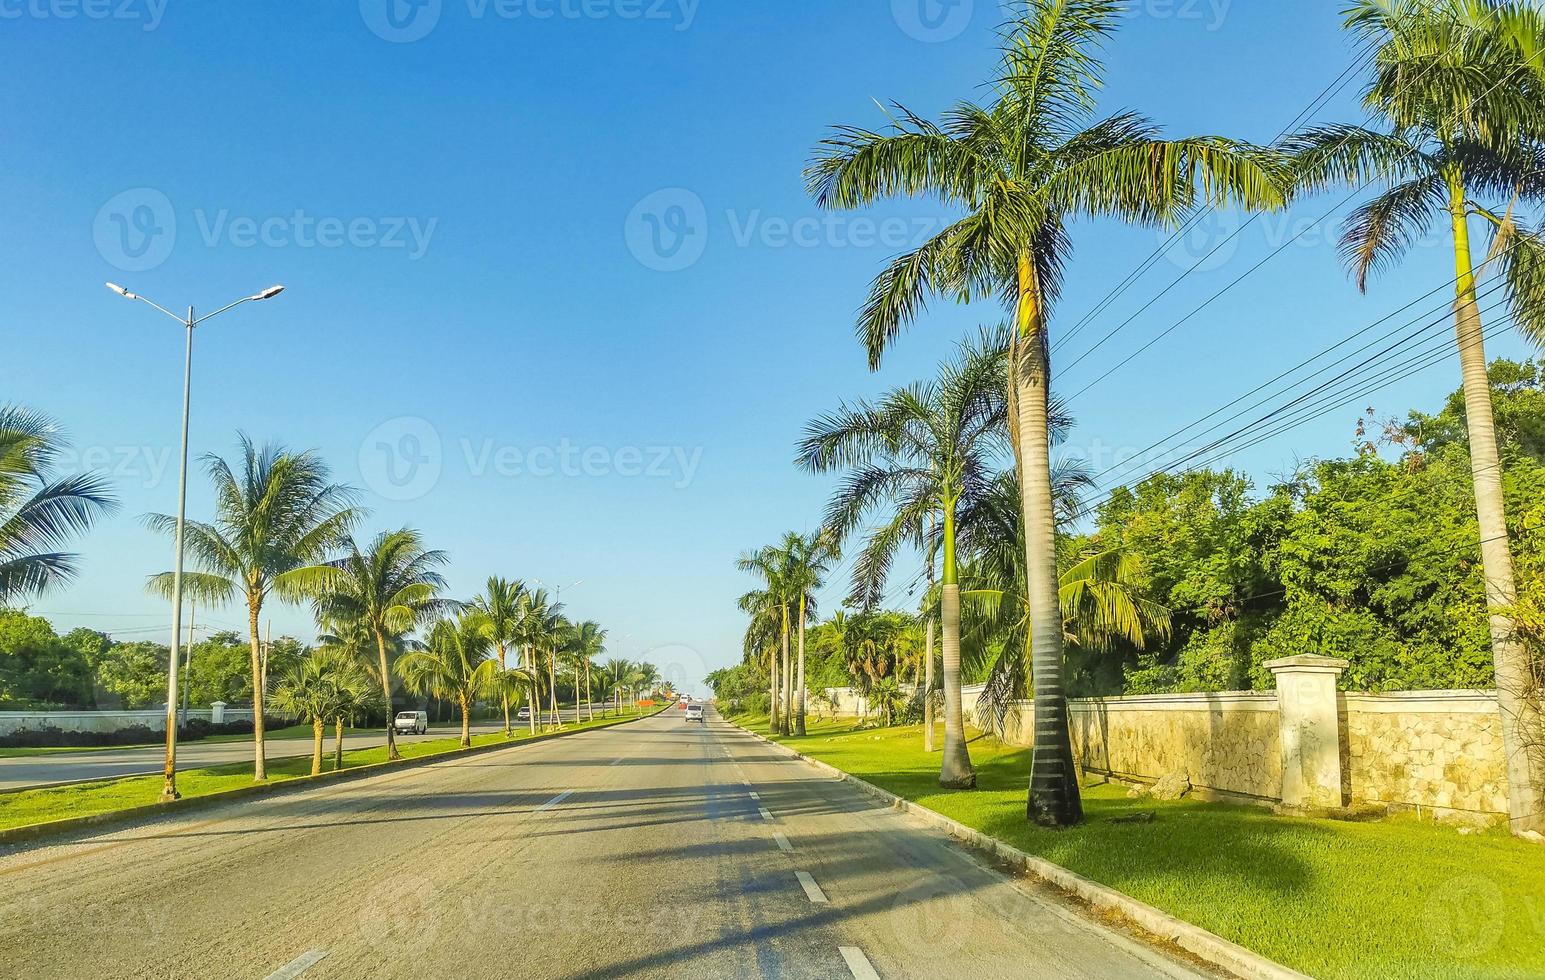 estrada típica de rua e paisagem urbana da playa del carmen, méxico. foto